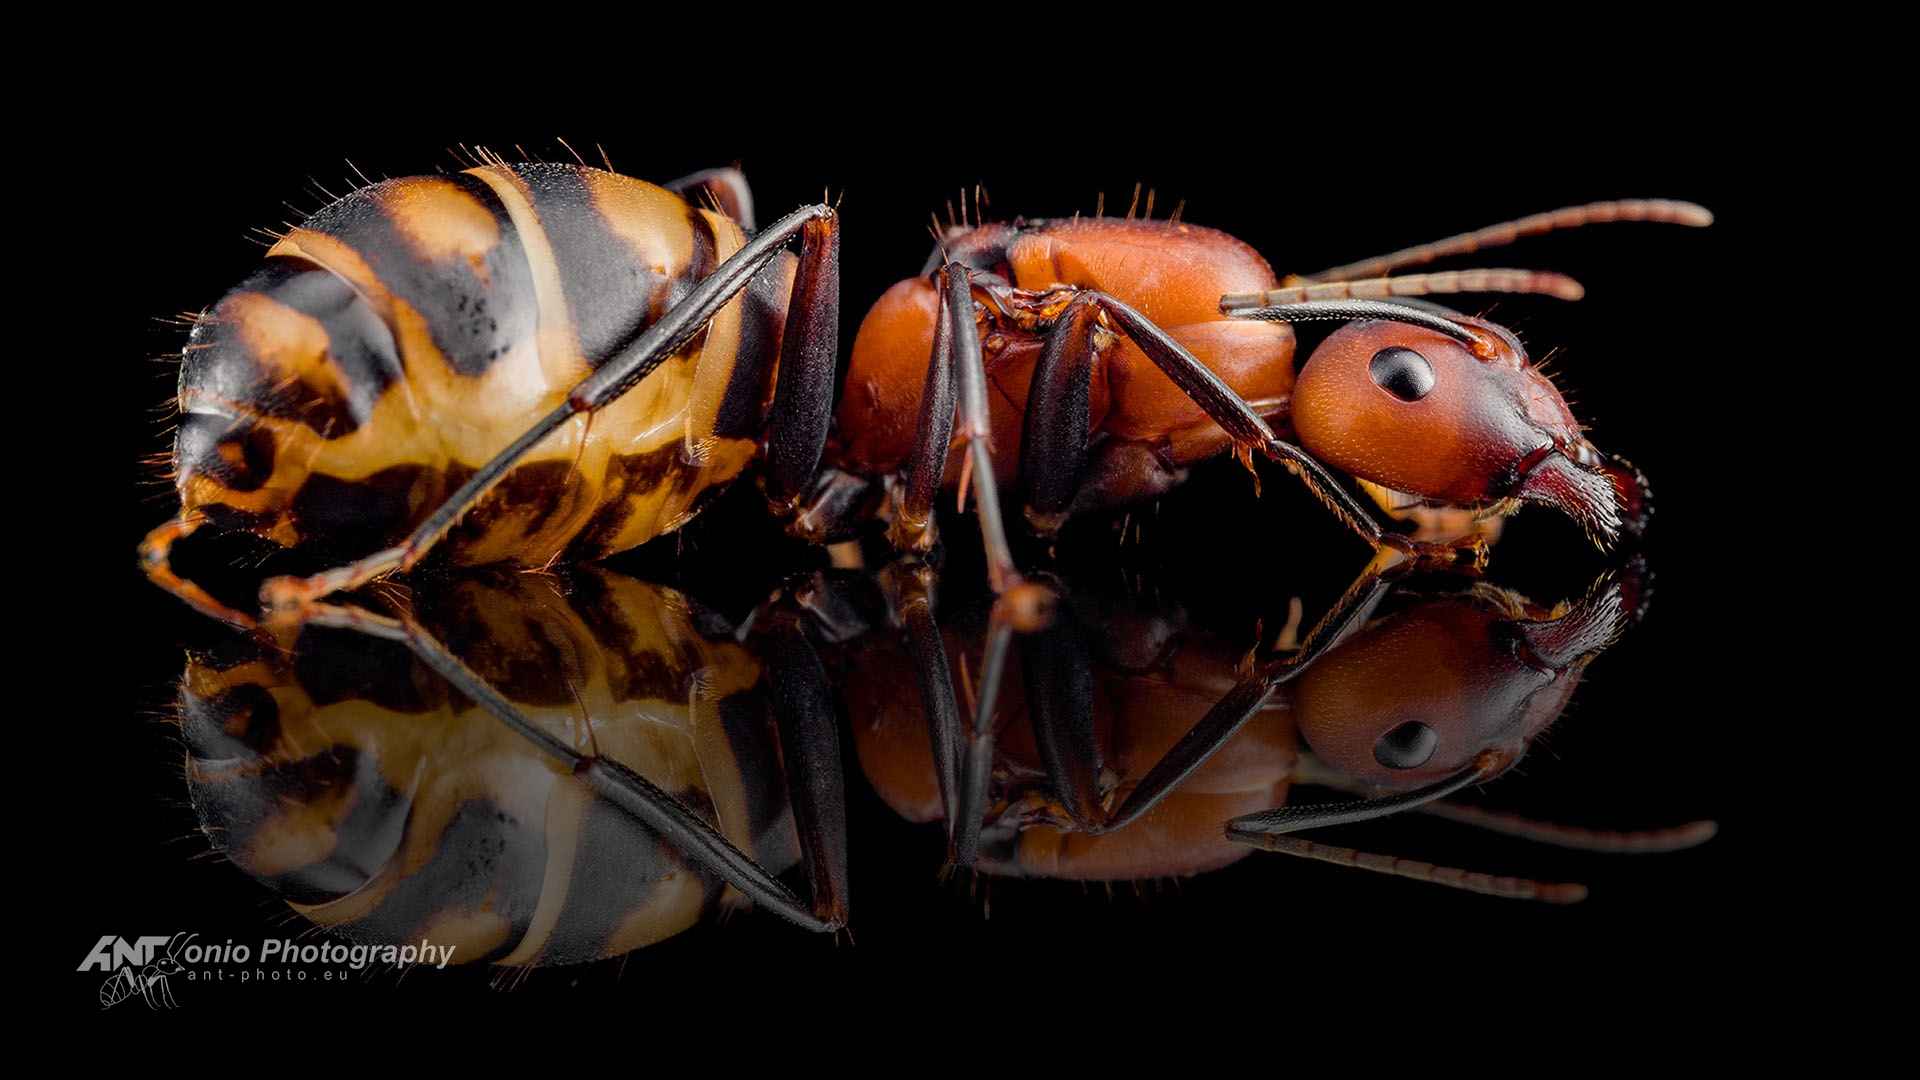 Camponotus habereri